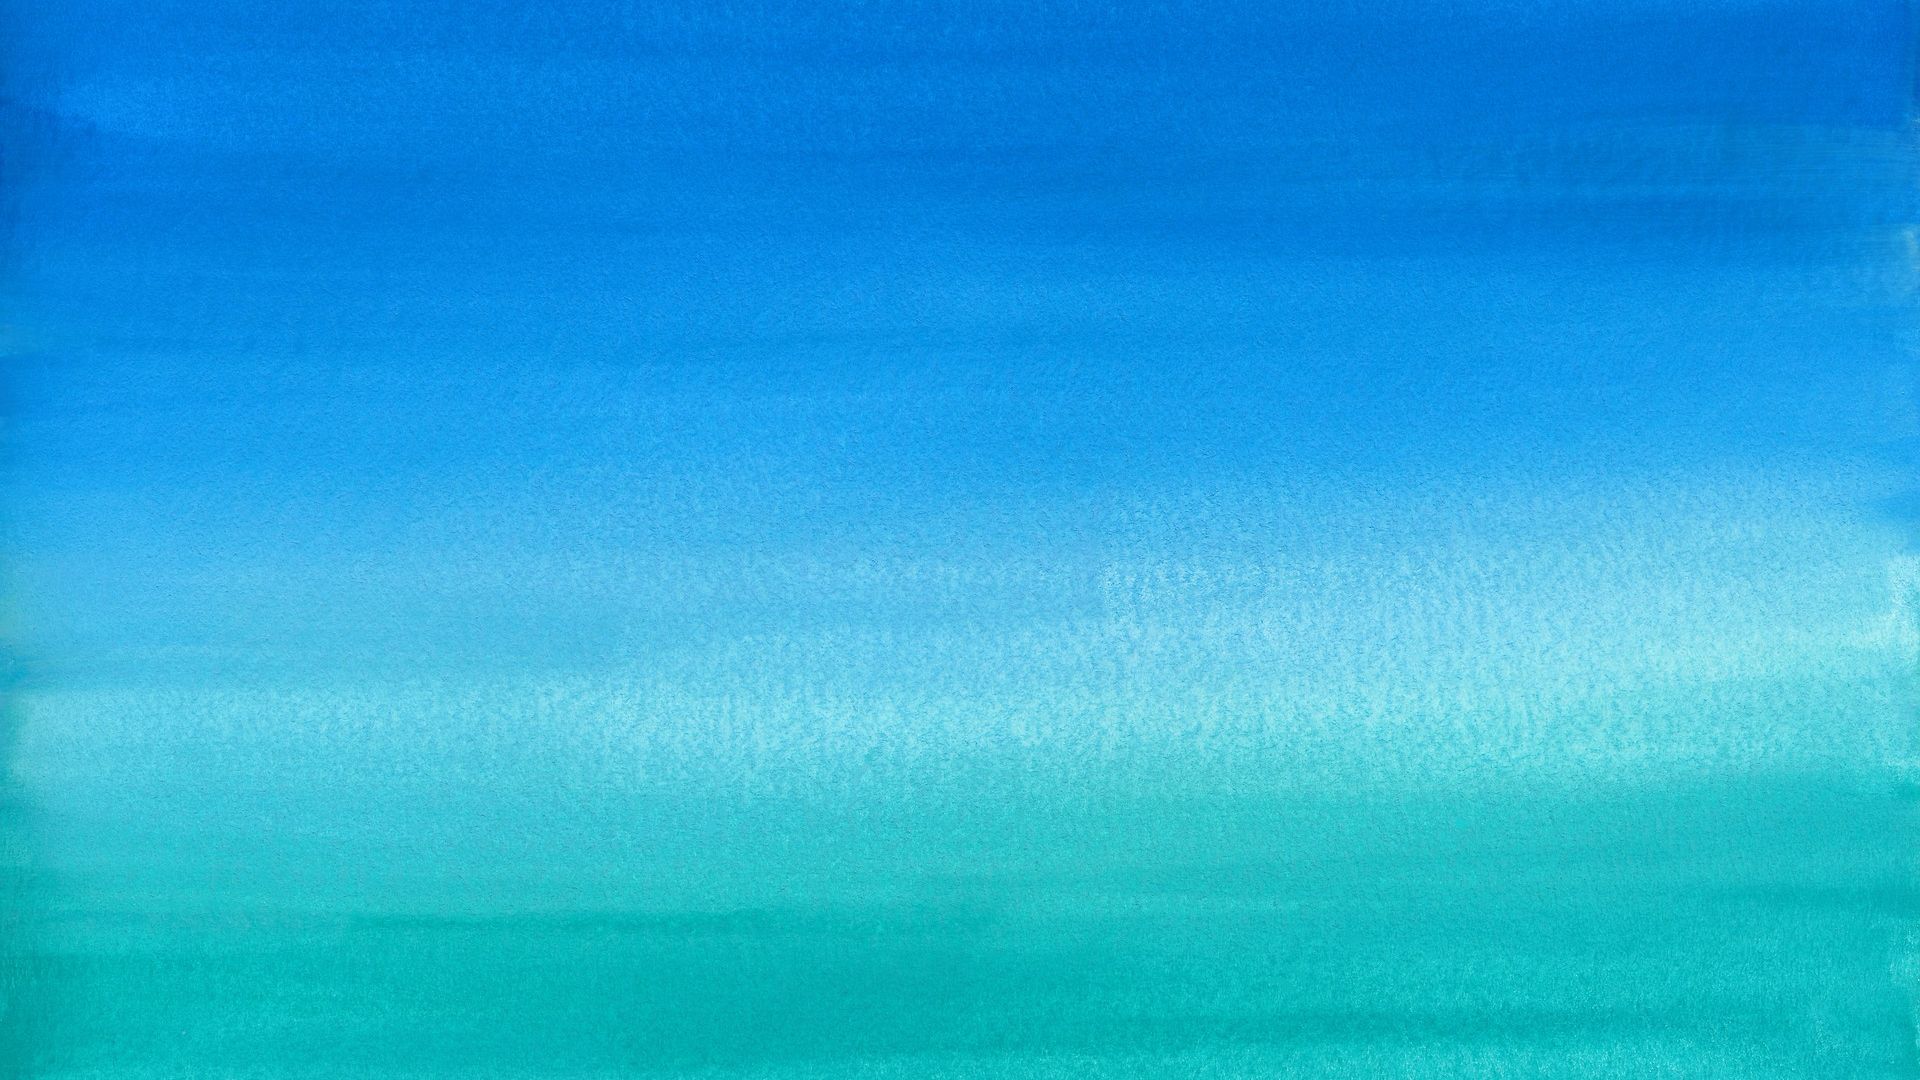 Wallpaper Blue shades, abstract